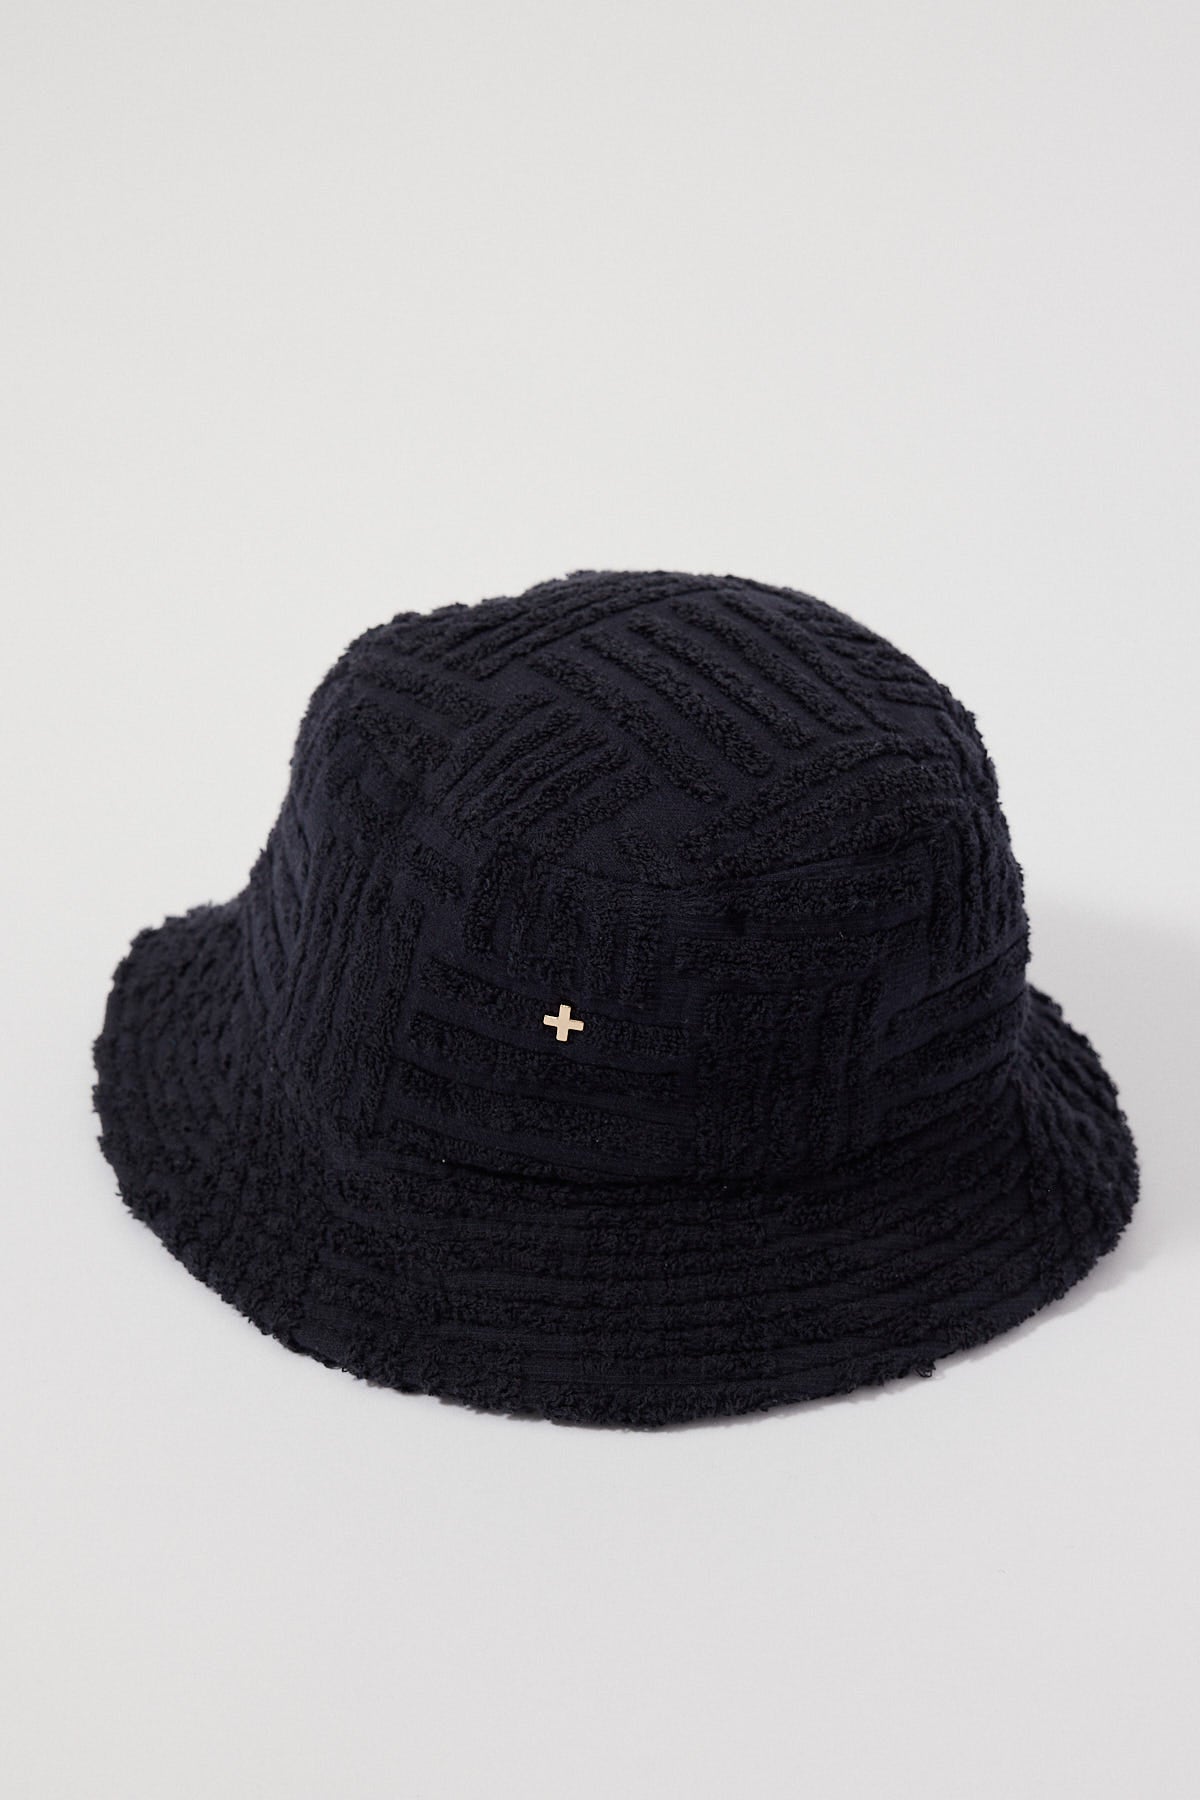 Peta + Jain Soleil Hat Black